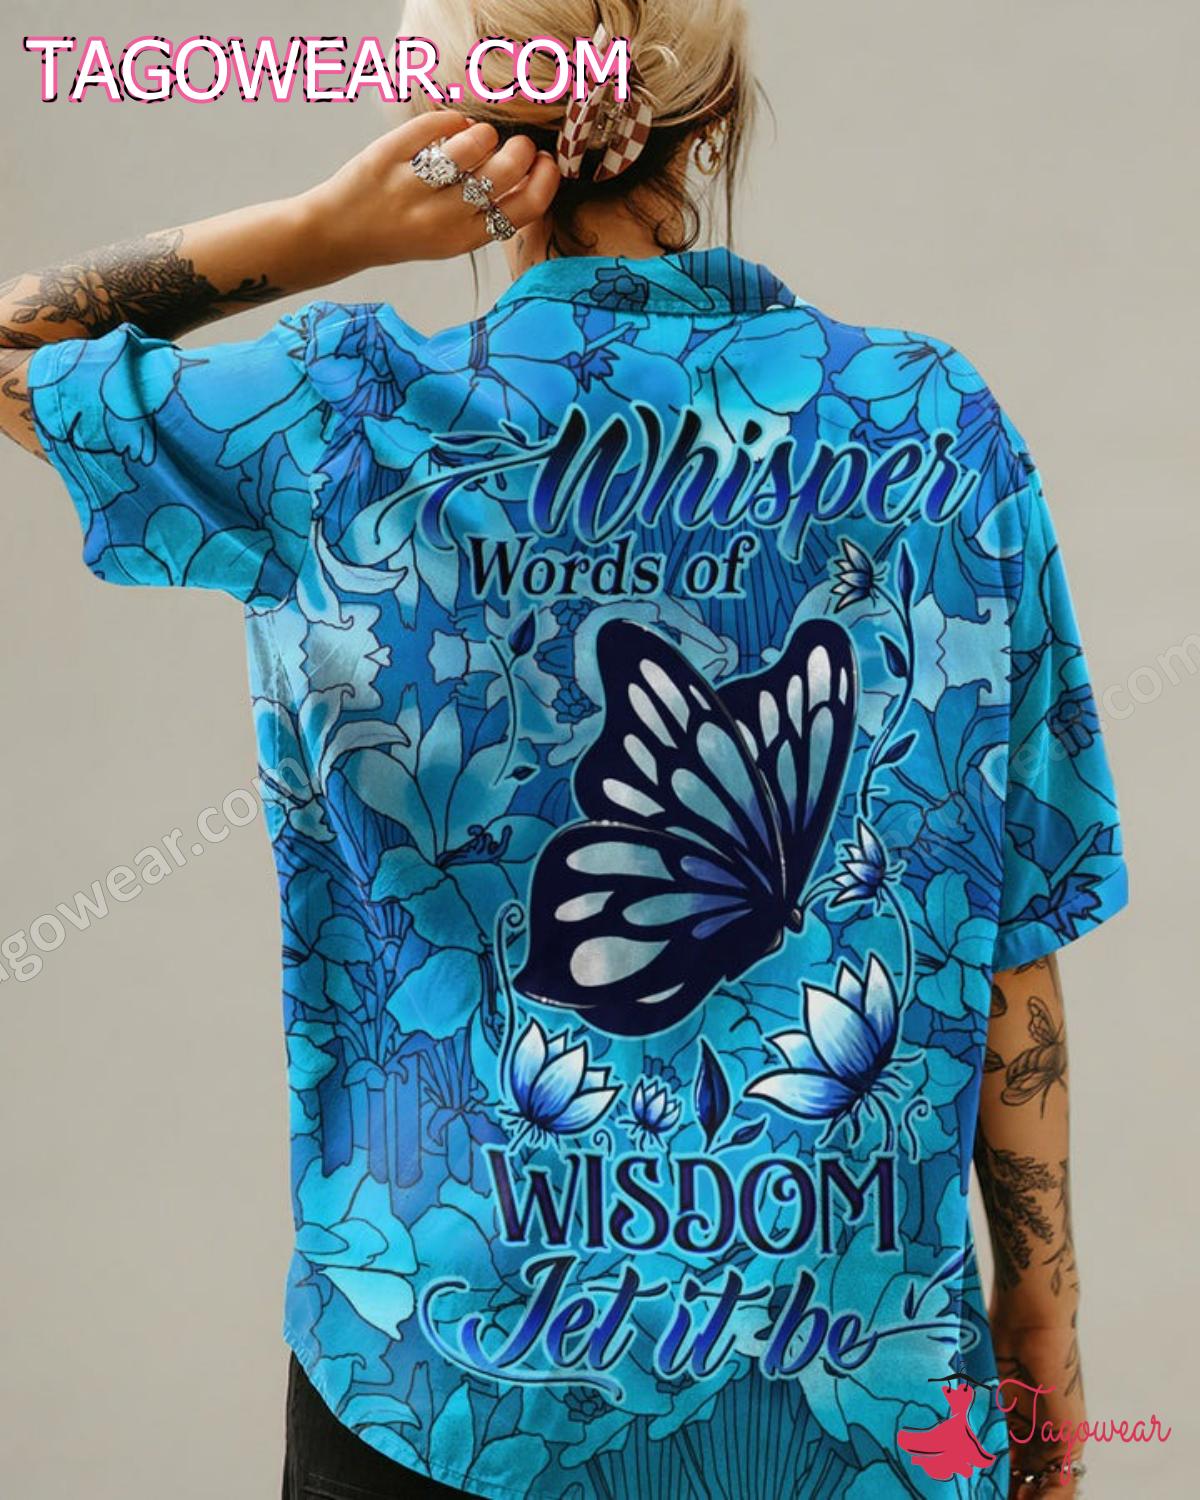 Butterfly Whisper Words Of Wisdom Let It Be Hawaiian Shirt